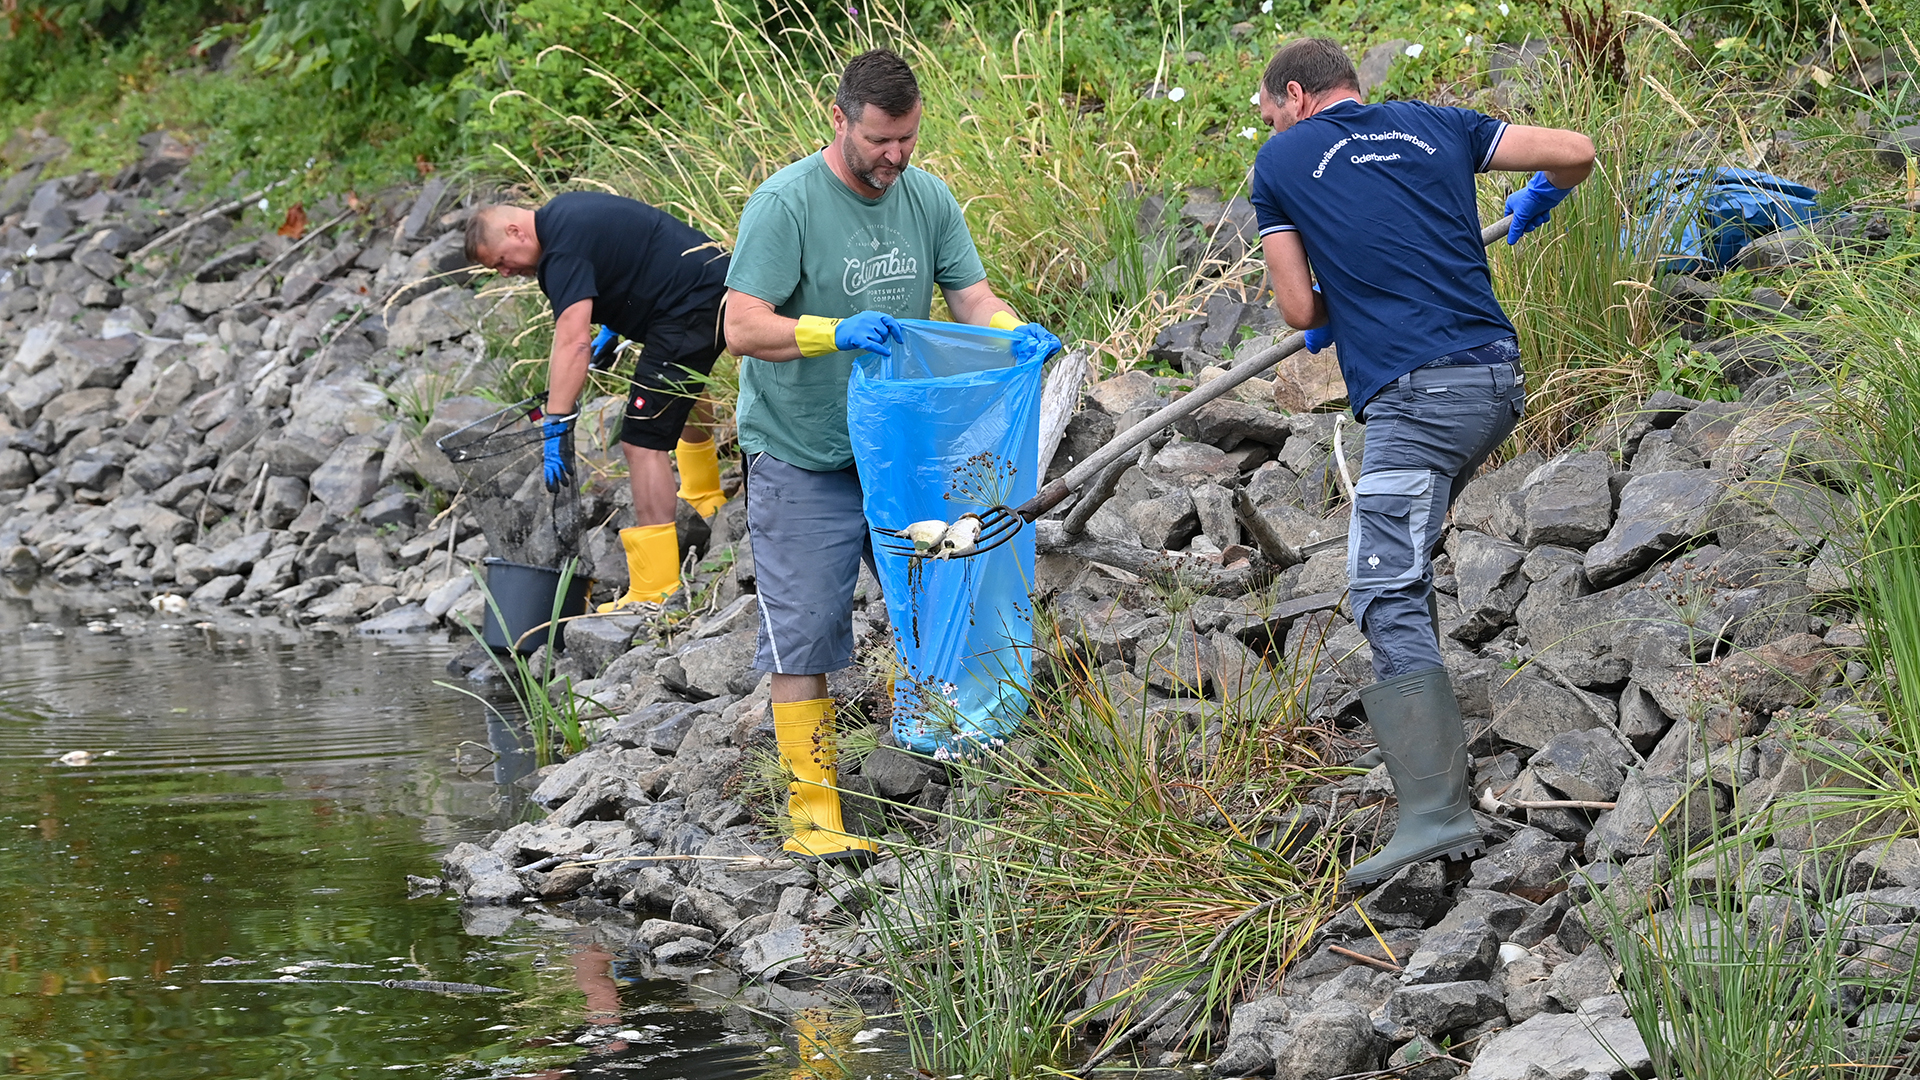 reiwillige Helfer bergen tote Fische aus dem Wasser des deutsch-polnischen Grenzflusses Oder. | dpa